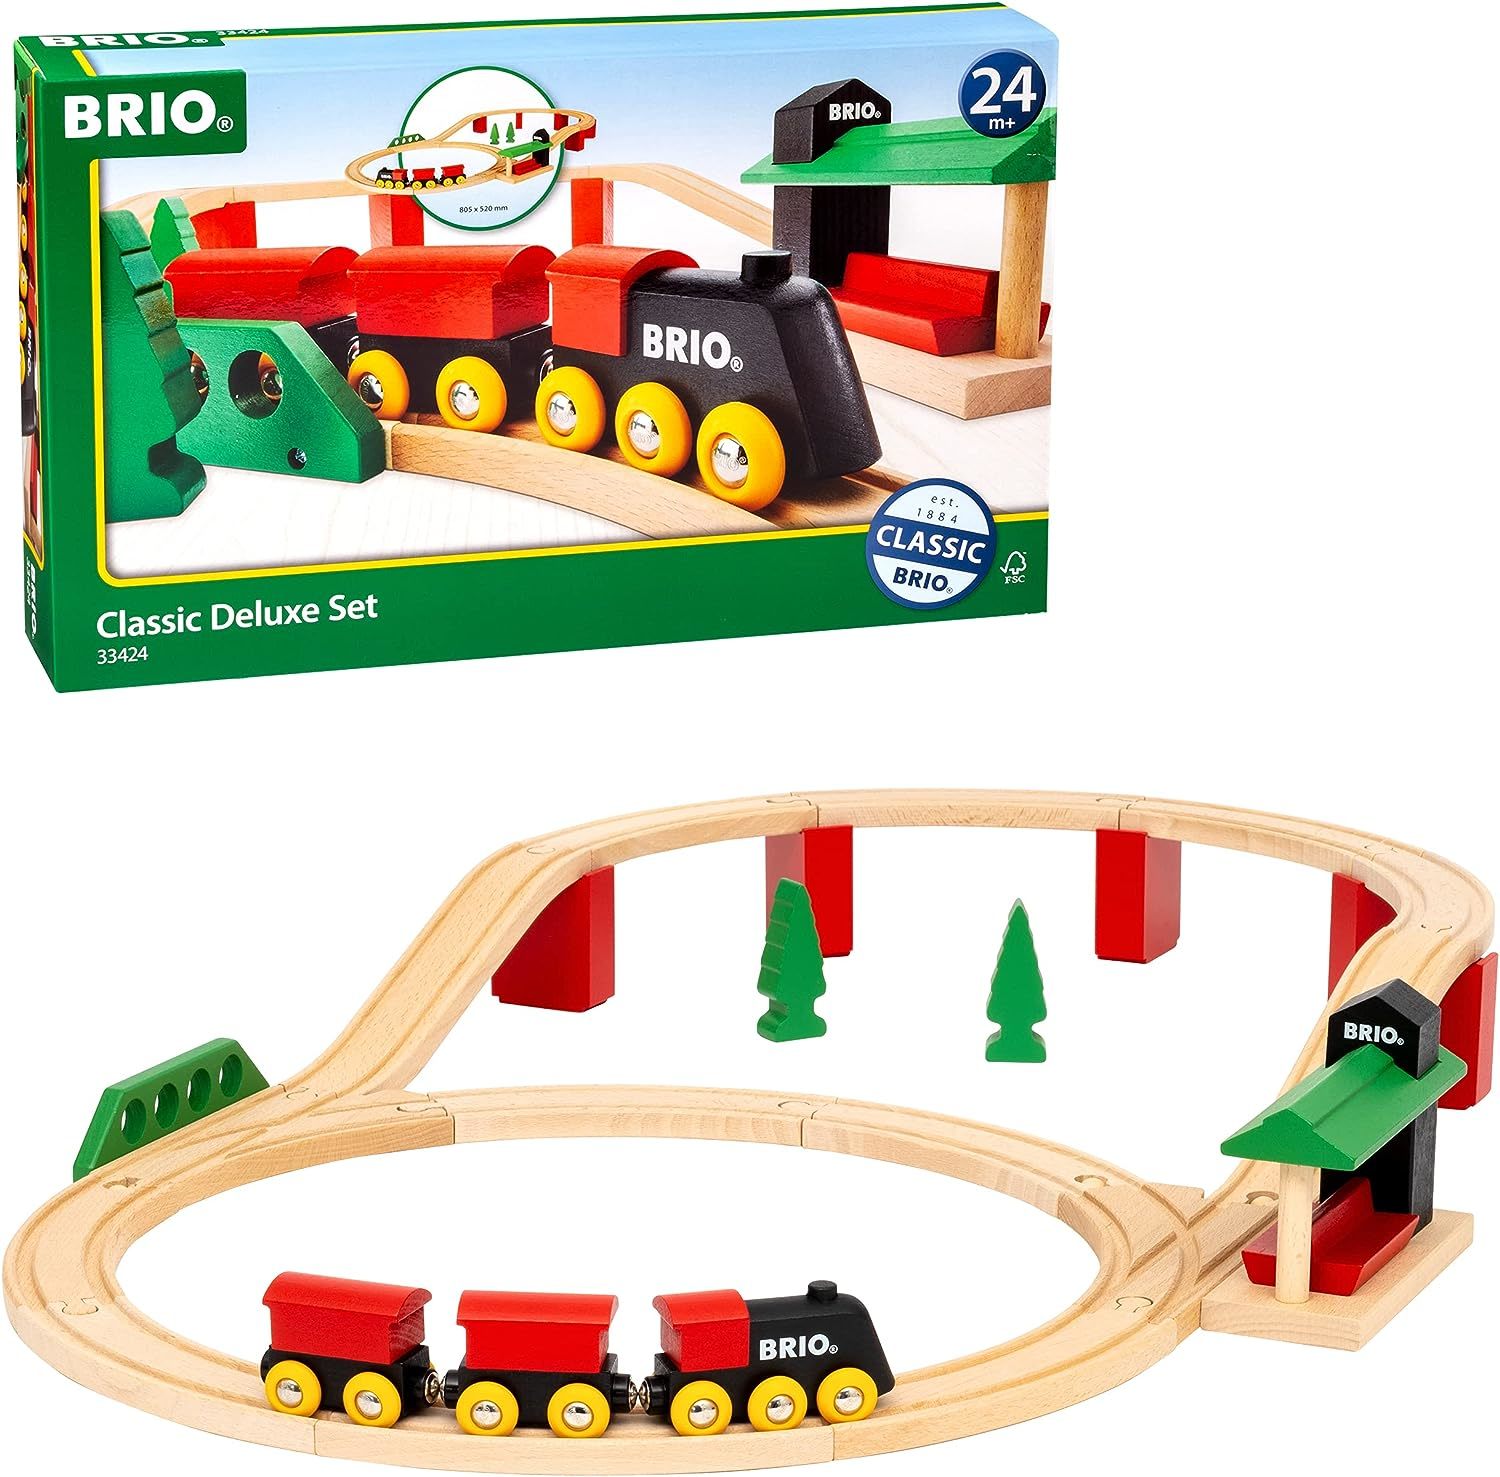 BRIO WORLD Classic Deluxe Train and Track Set 33424